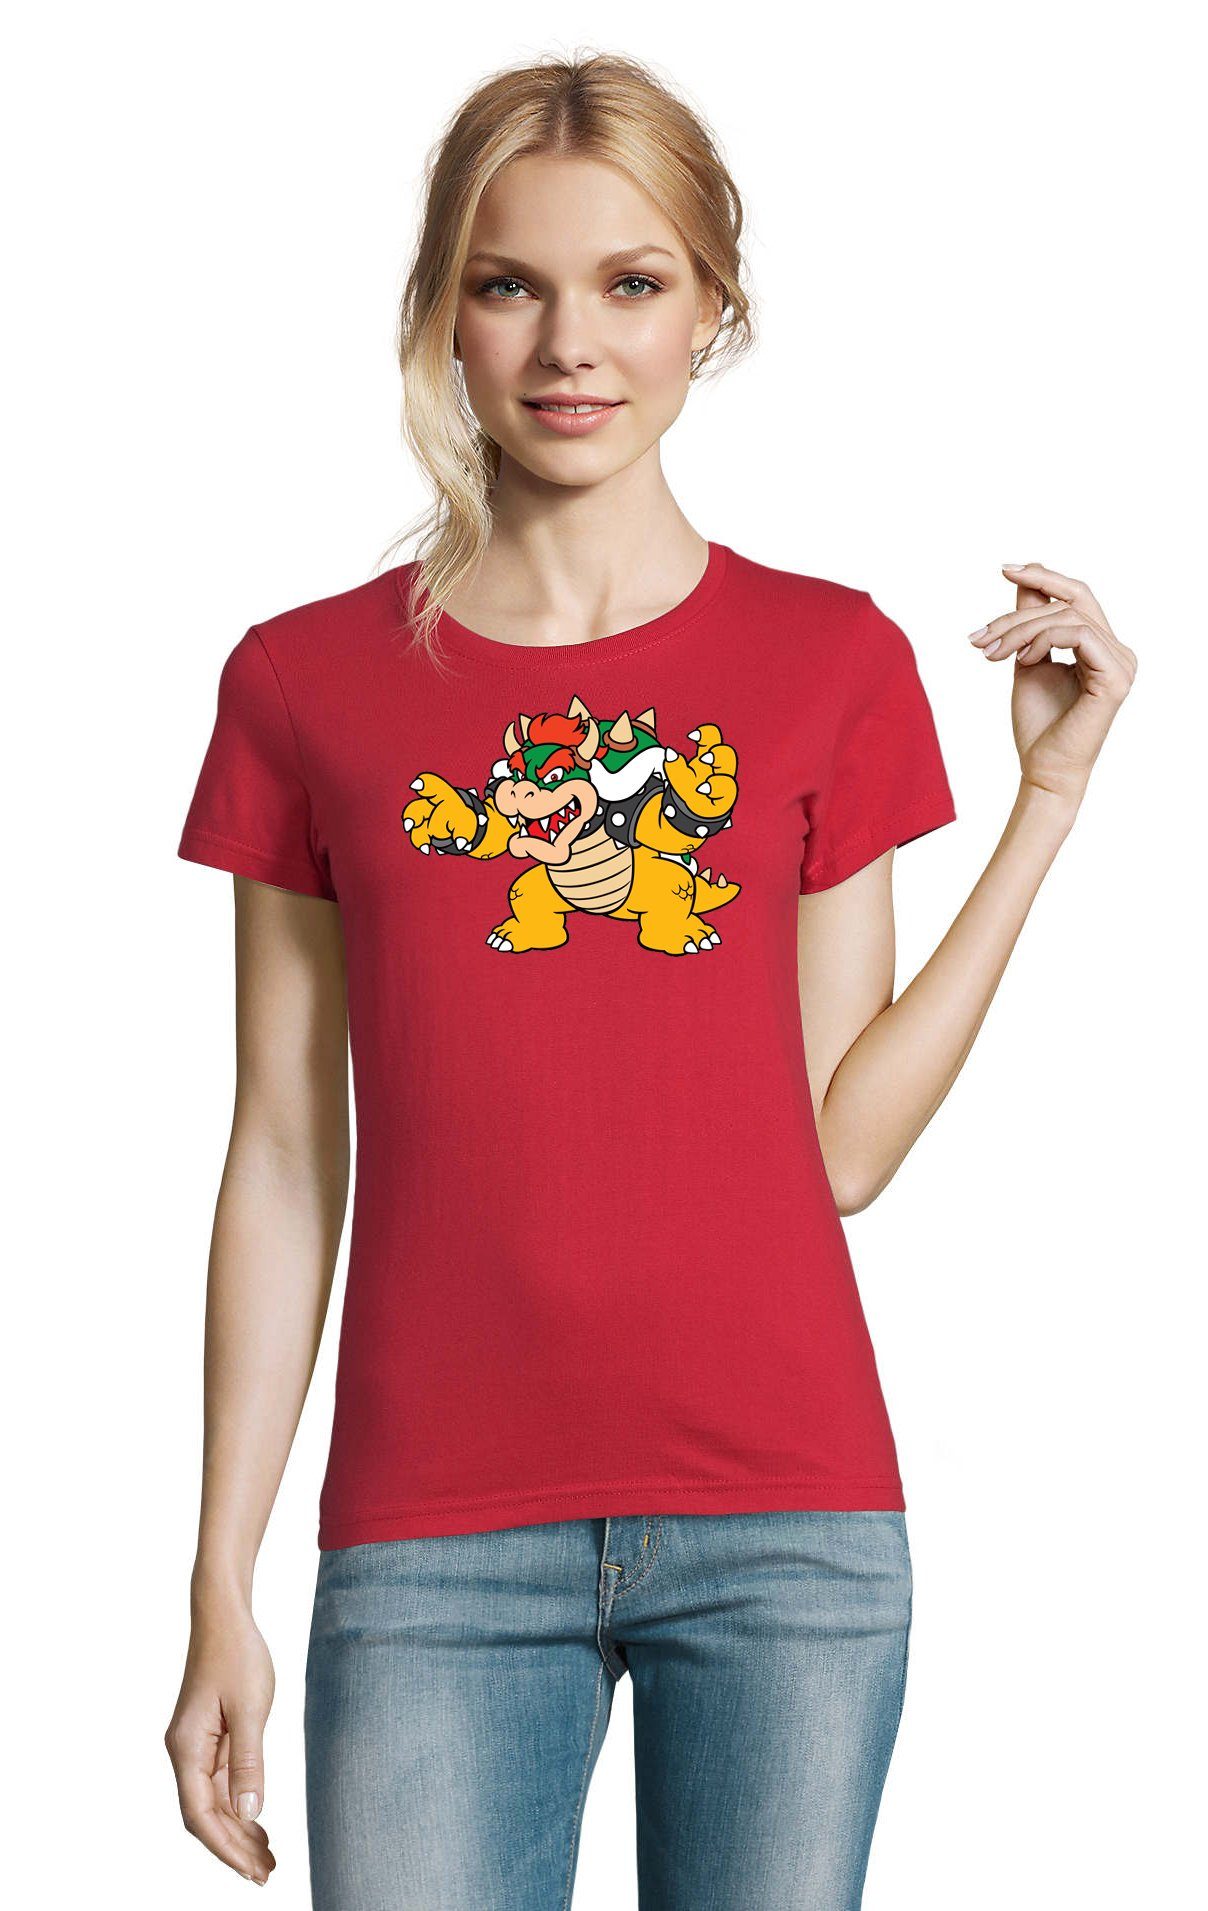 Blondie & Brownie T-Shirt Damen Bowser Nintendo Mario Yoshi Luigi Game Gamer Gaming Konsole Rot